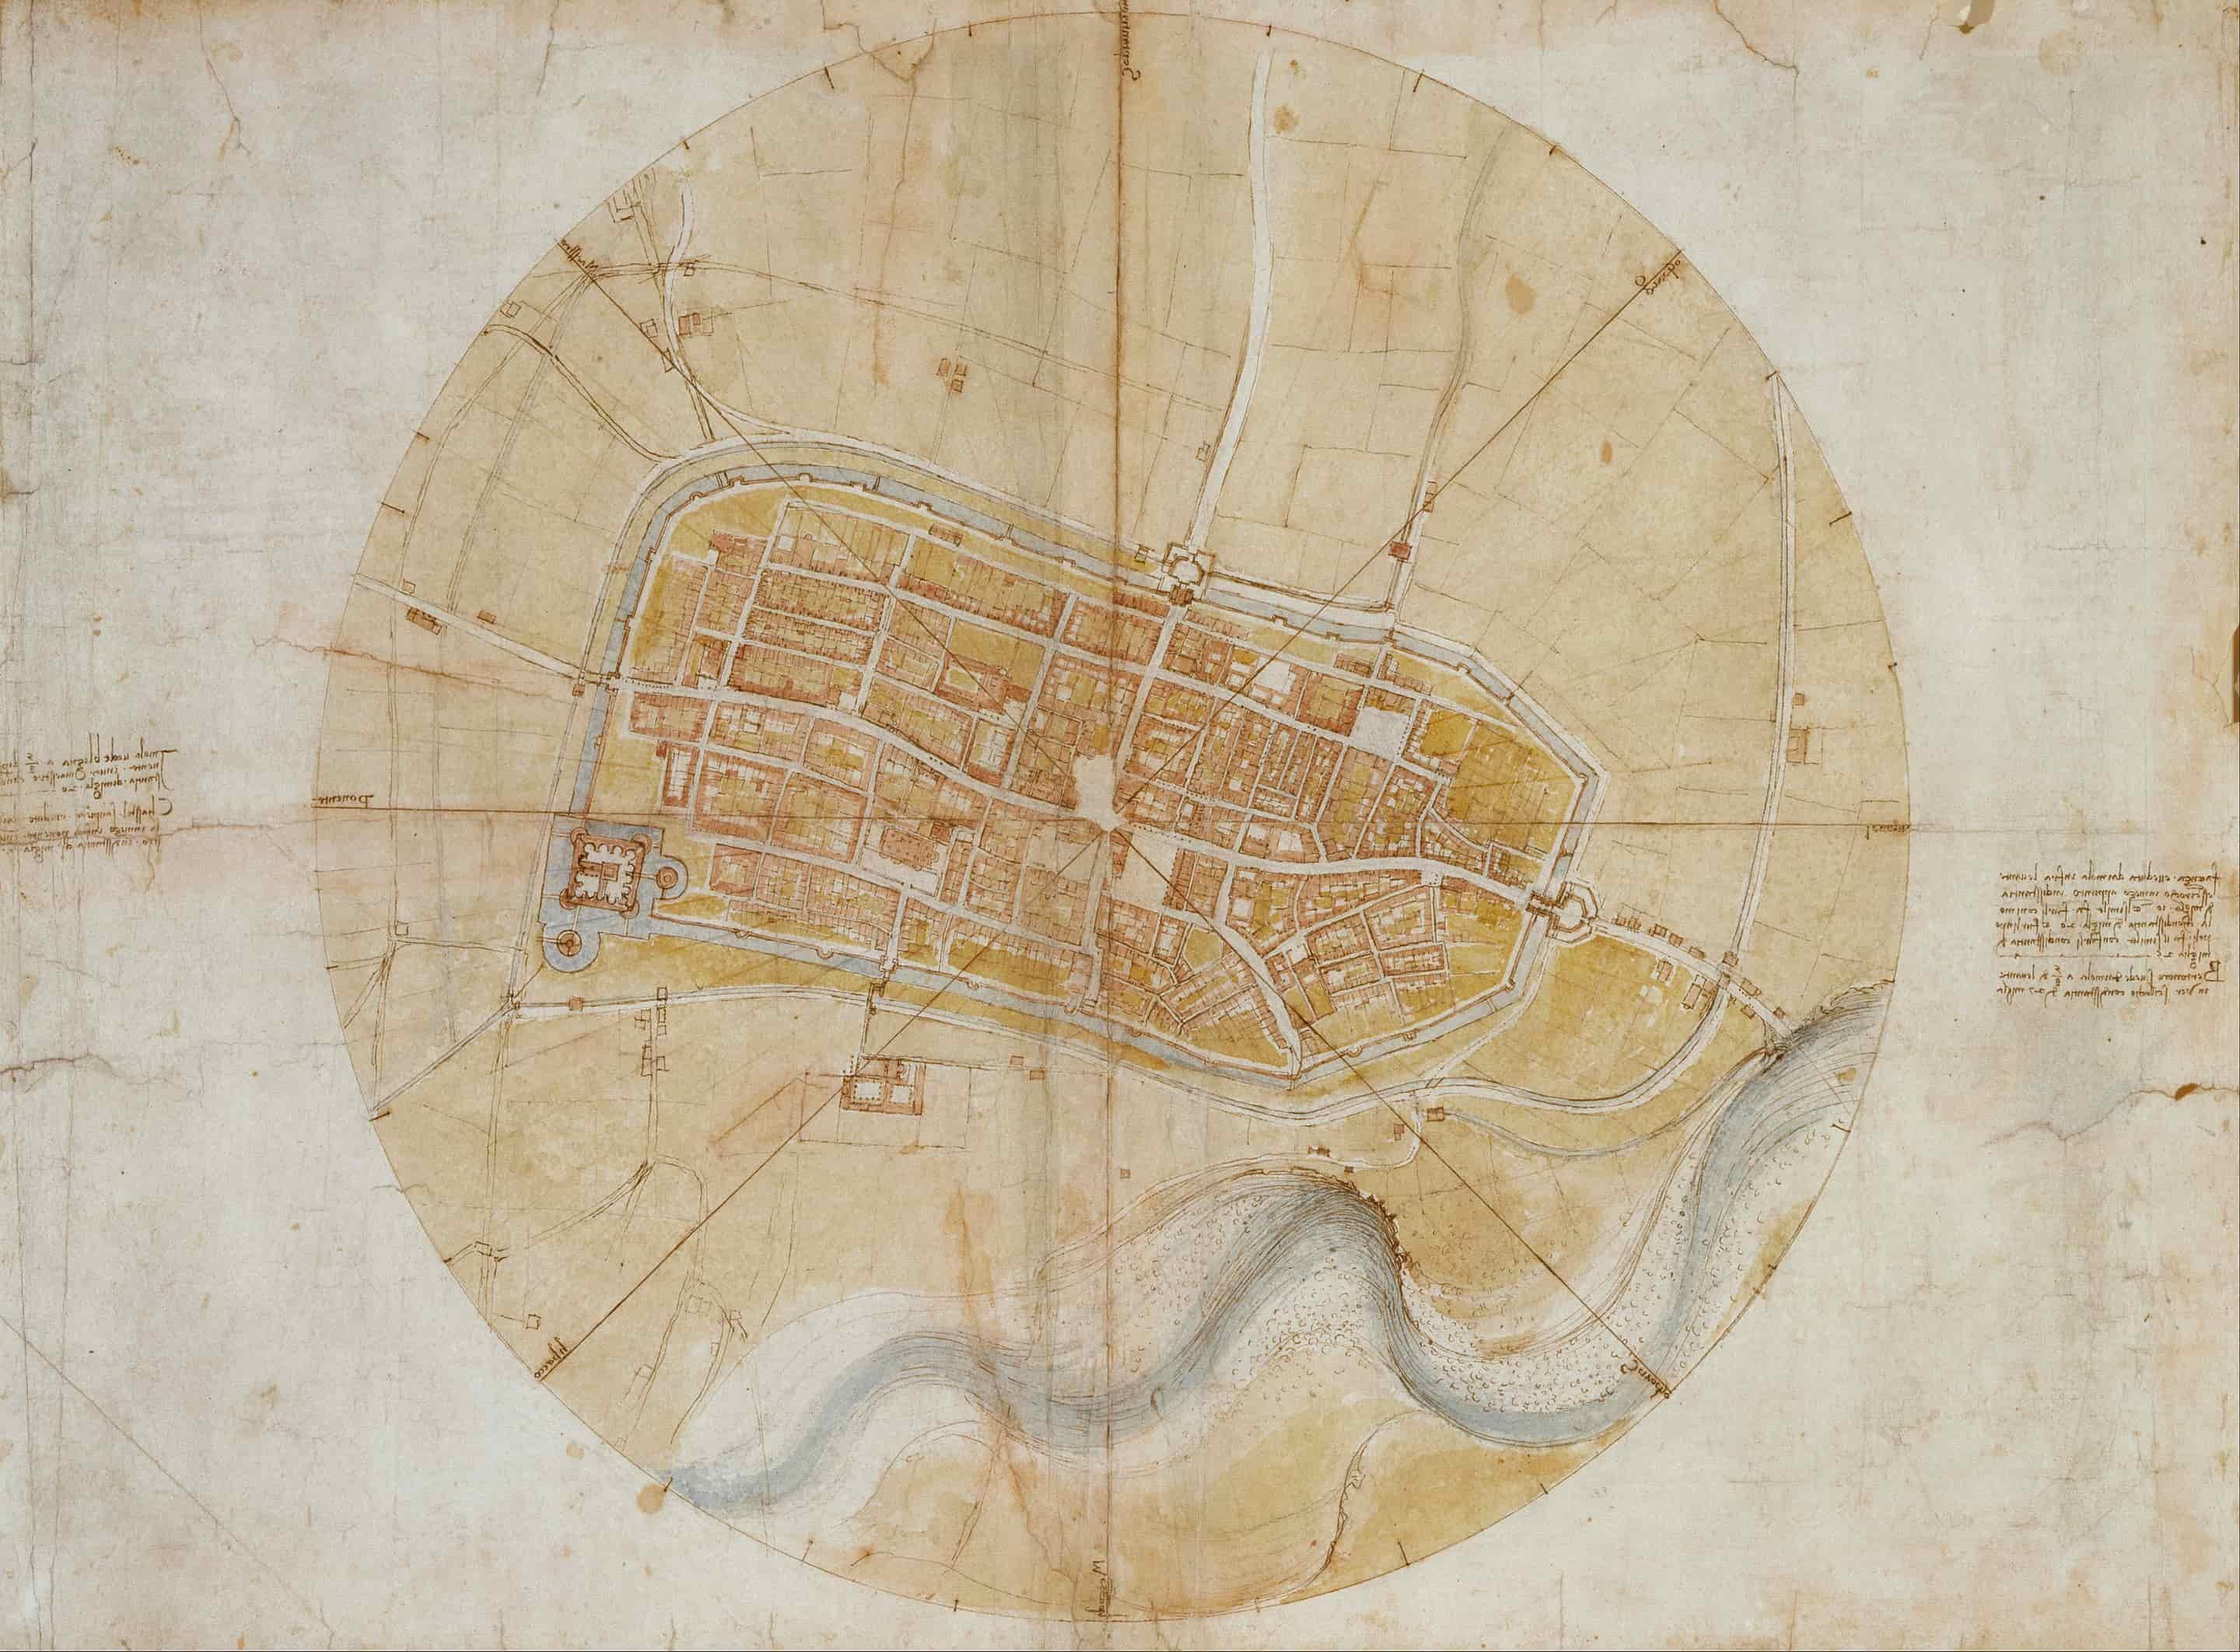 Leonardo da Vinci “Plan of Imola” - 1502